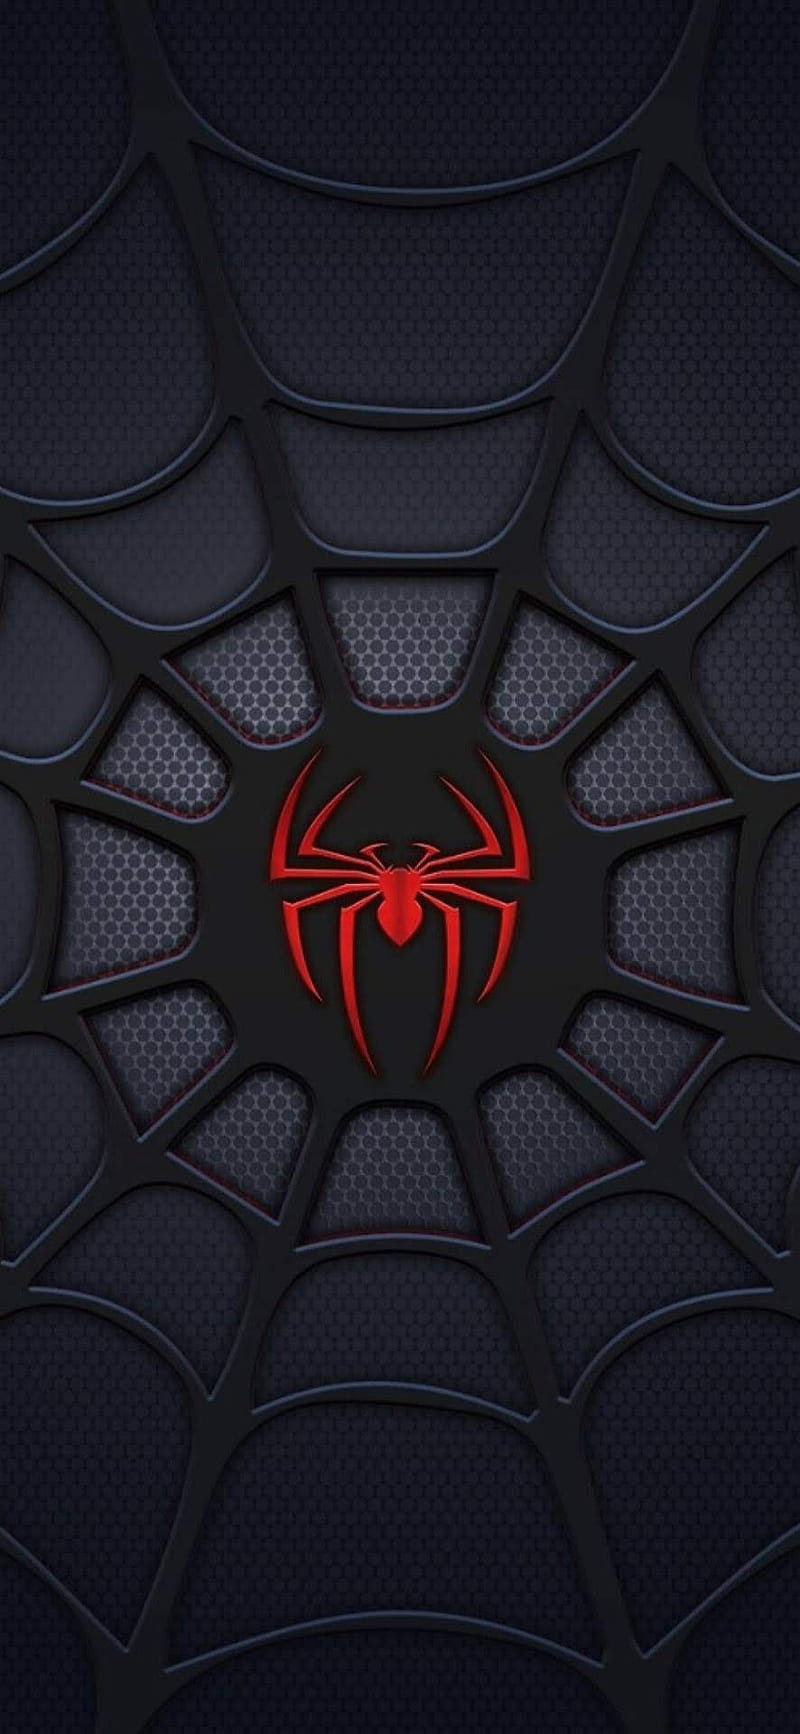 Spiderman đen: Spiderman đen là một nhân vật huyền thoại điện ảnh với tạo hình vô cùng cuốn hút. Nếu bạn yêu thích những siêu anh hùng và truyện tranh, hãy xem hình ảnh về Spiderman đen để tận hưởng cảm giác phiêu lưu và giải trí.